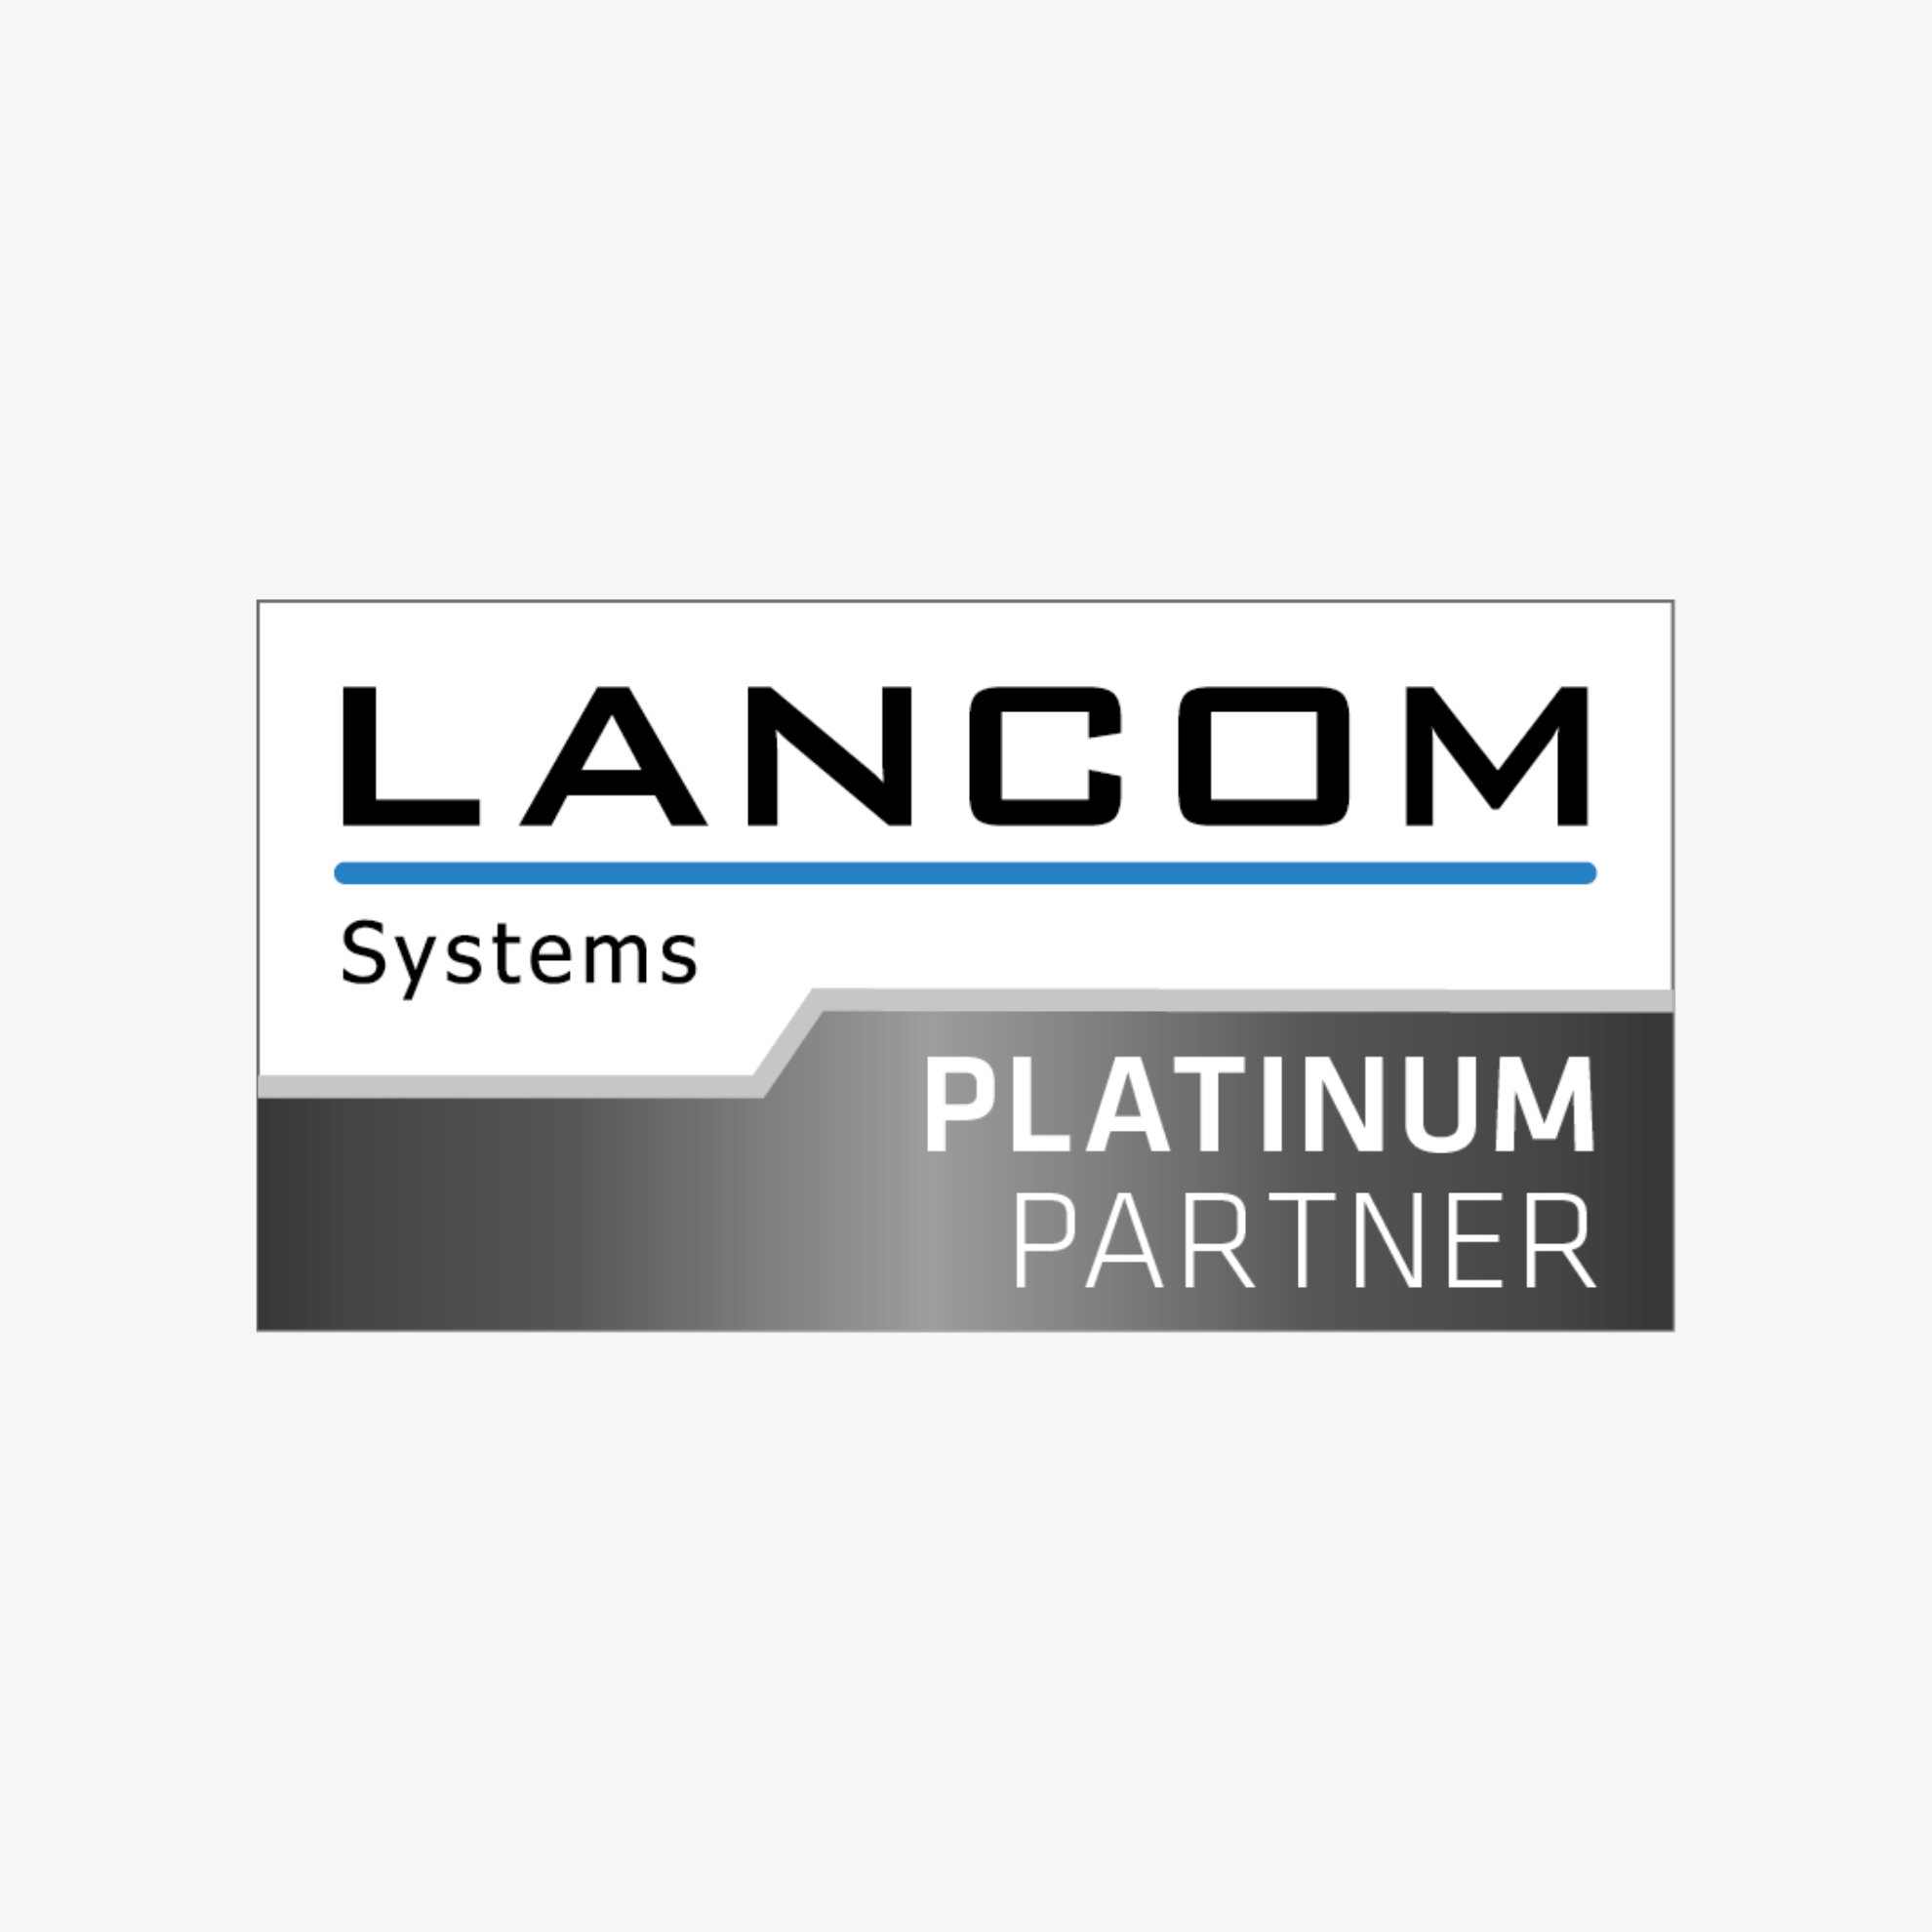 Lancom Systems - Platinum Partner - insysta